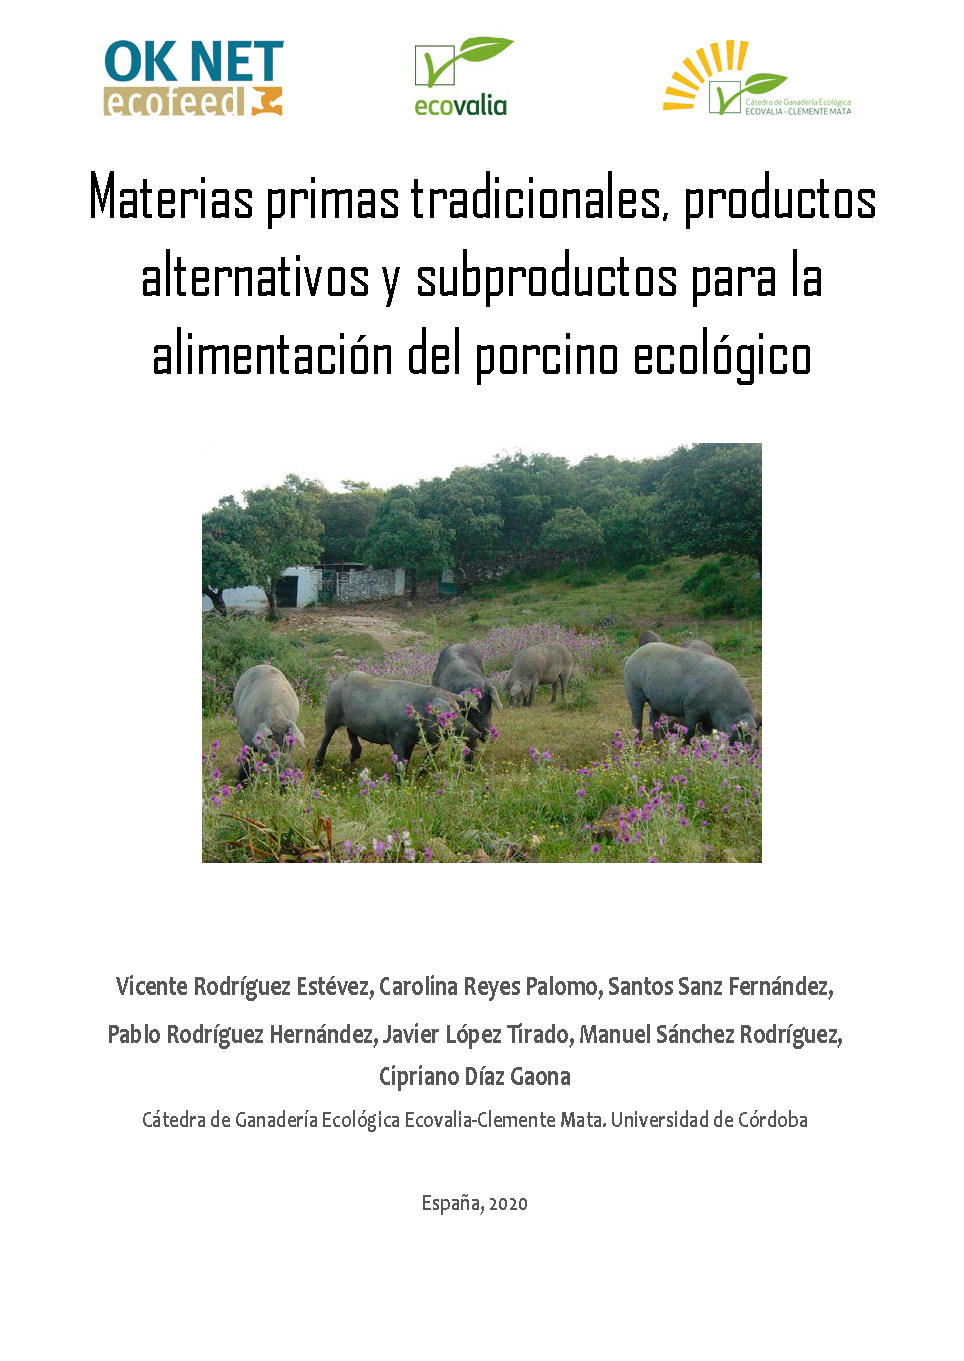 Materias primas tradicionales, productos y subproductos alternativos para la alimentación porcina ecológica